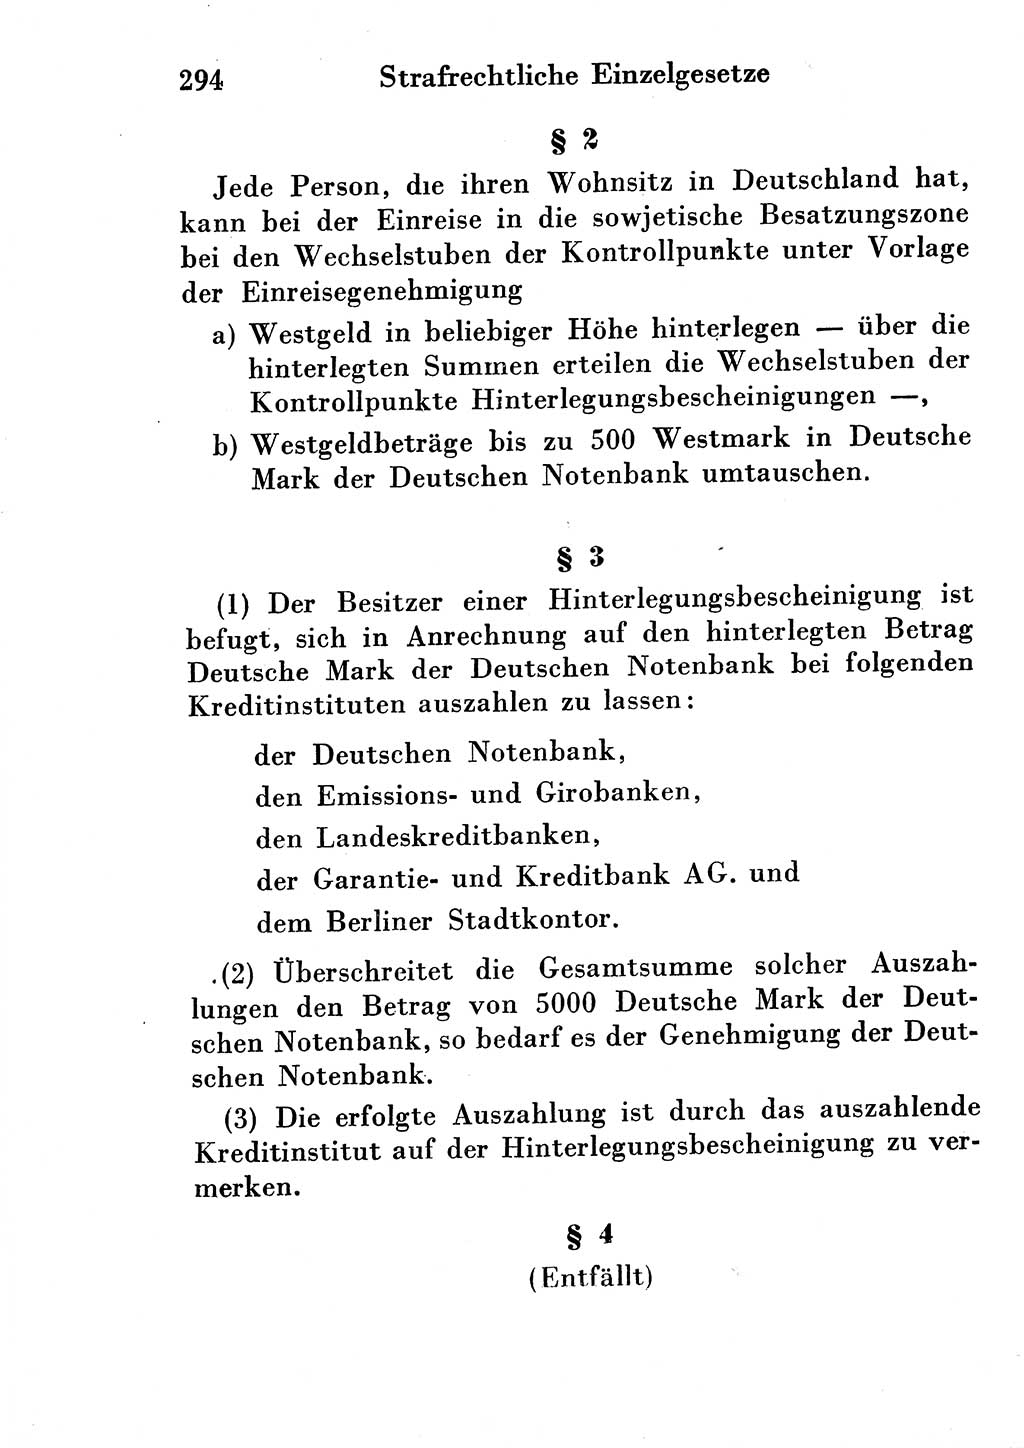 Strafgesetzbuch (StGB) und andere Strafgesetze [Deutsche Demokratische Republik (DDR)] 1954, Seite 294 (StGB Strafges. DDR 1954, S. 294)